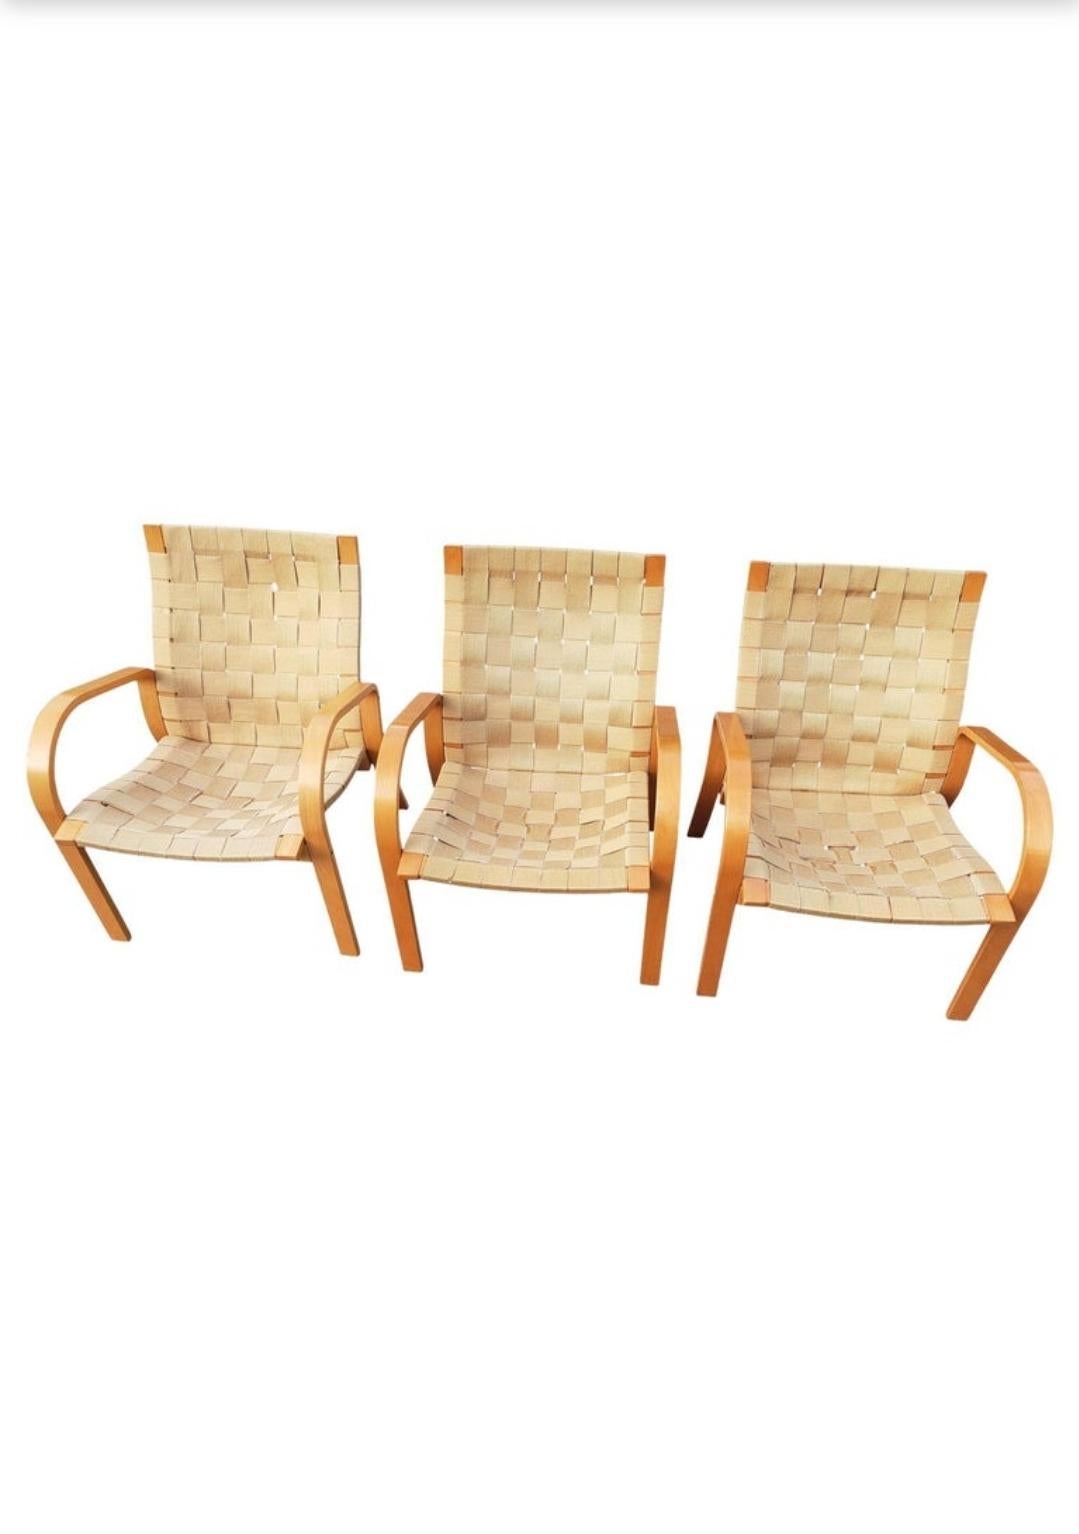 Mid Century Scandinavian Modern Beech and Canvas webbed lounge chair, Bruno Mathsson zugeschrieben.
Drei Stühle aus lackiertem Buchenholz aus den 1970er Jahren mit goldfarbenen Gurtbändern aus gewebtem Segeltuch. Buche Rahmen in sehr gutem